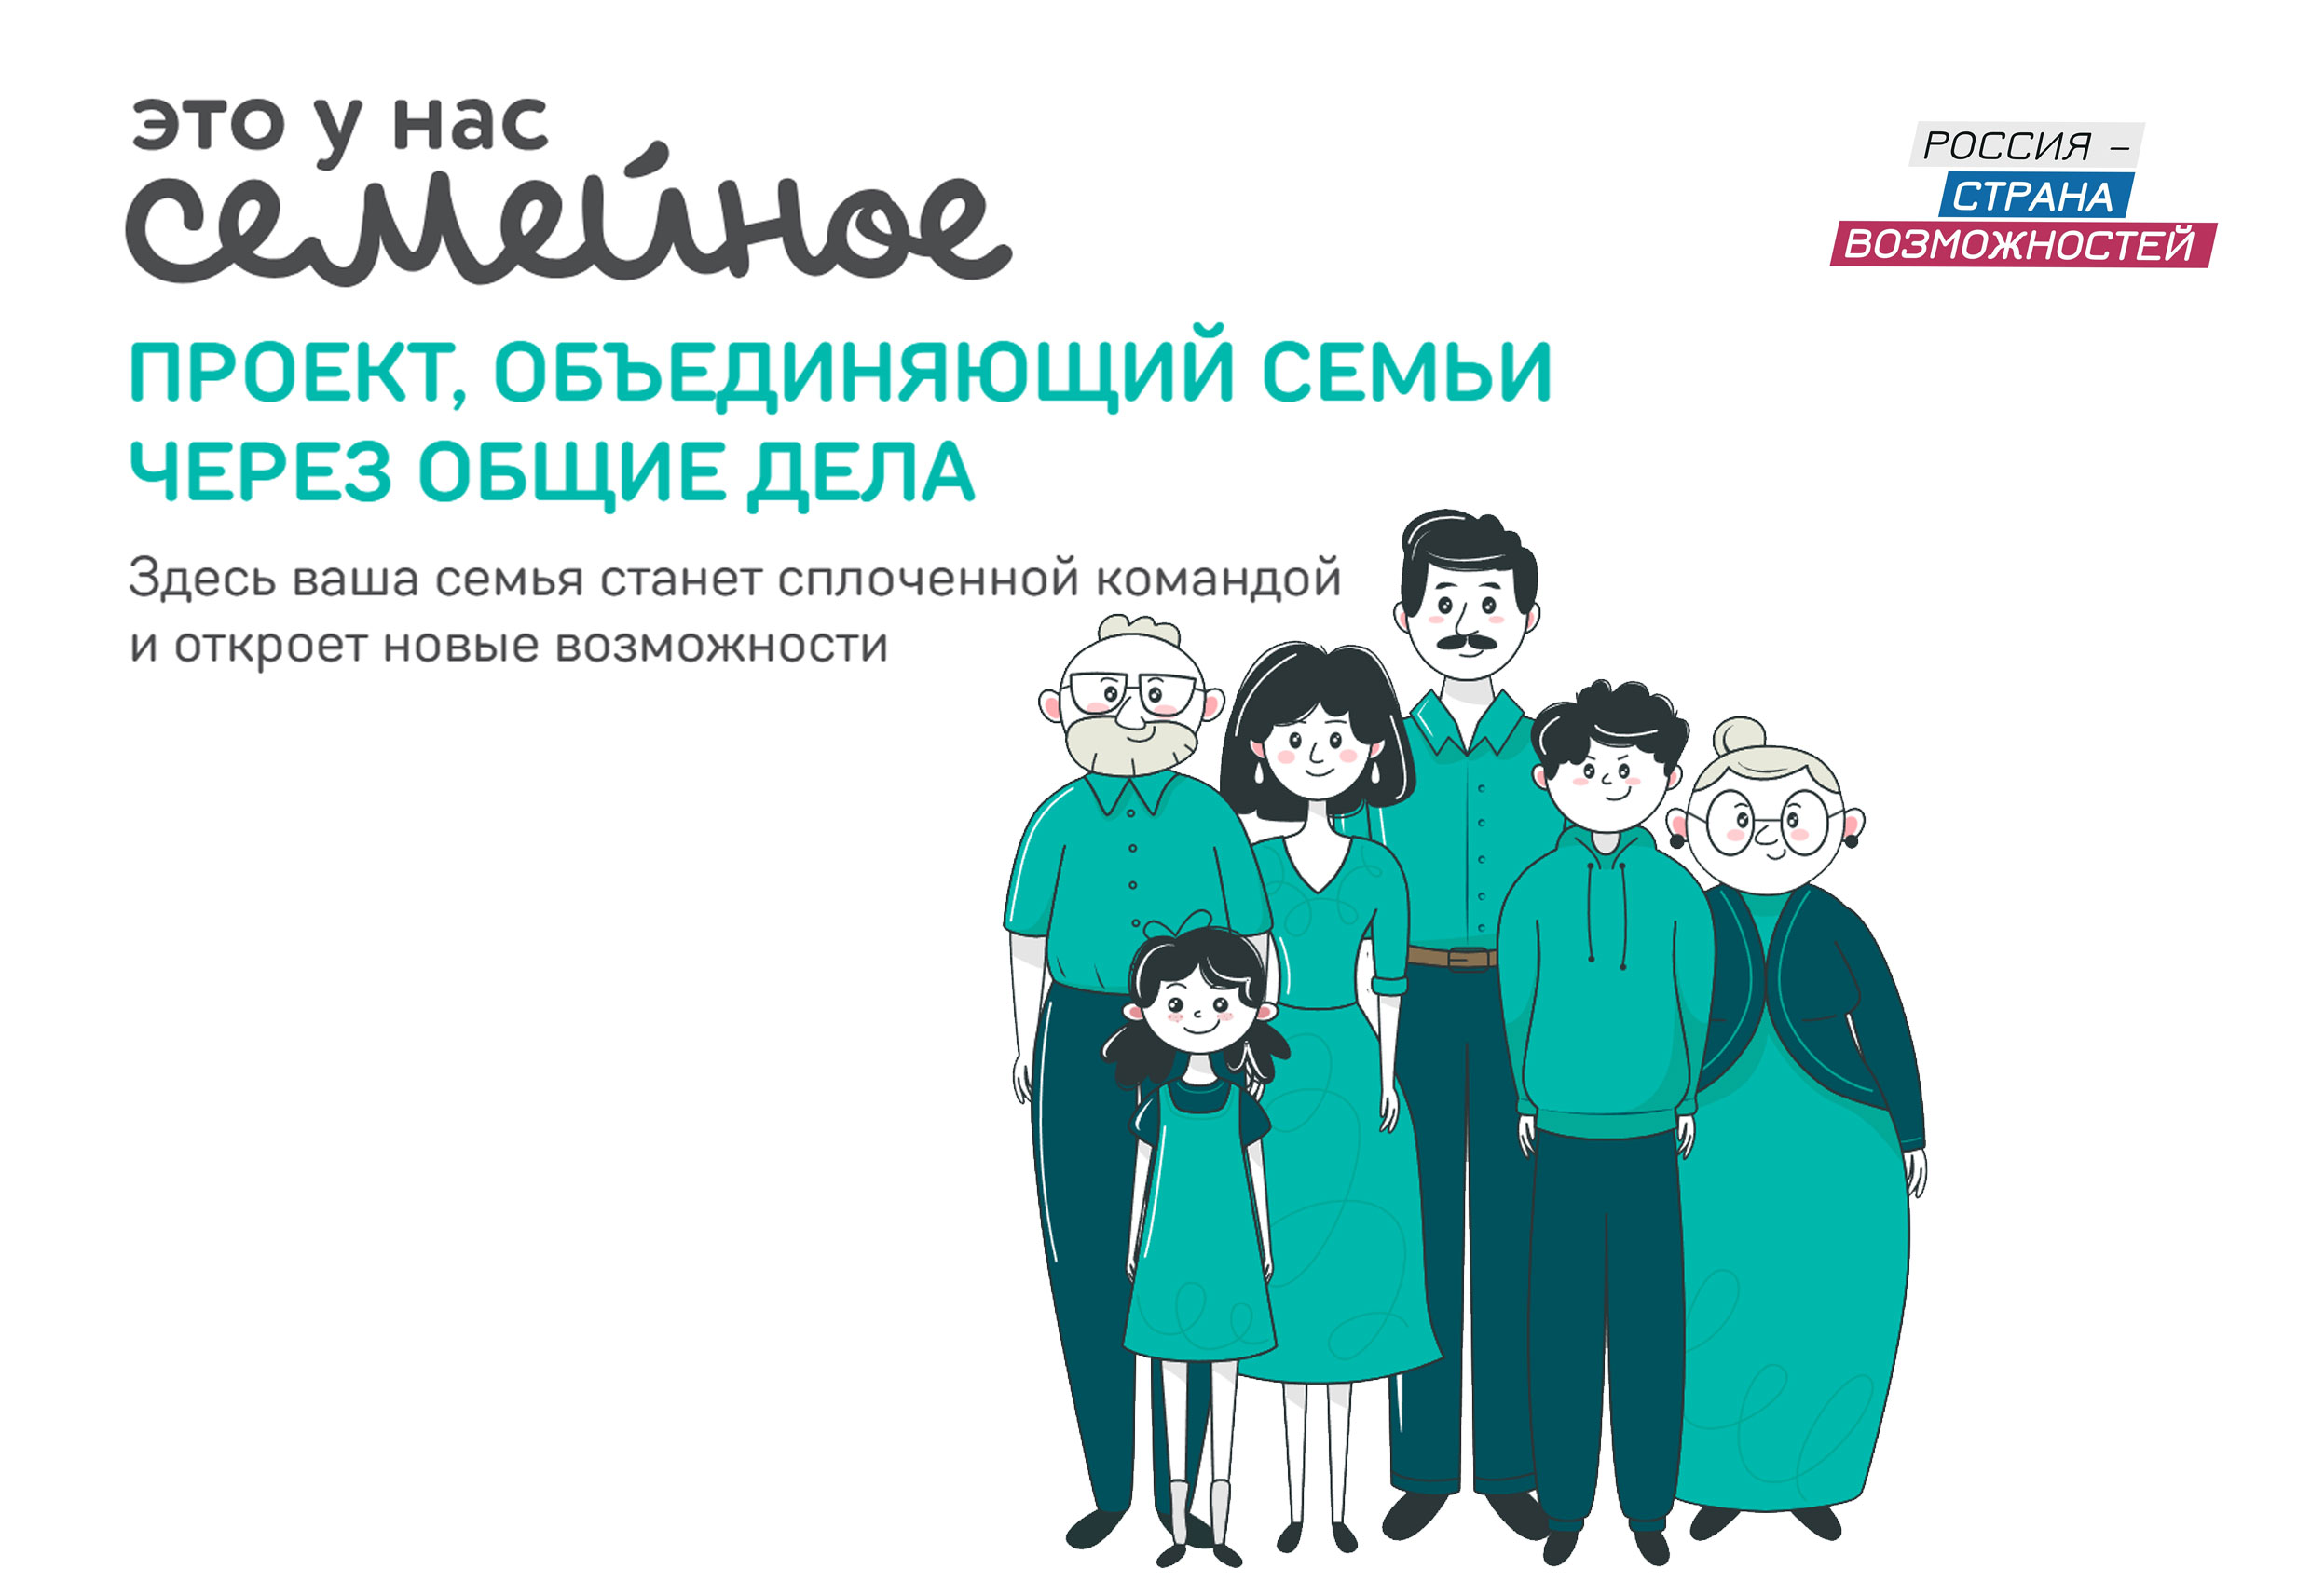 Всероссийский семейный конкурс «Это у нас семейное».